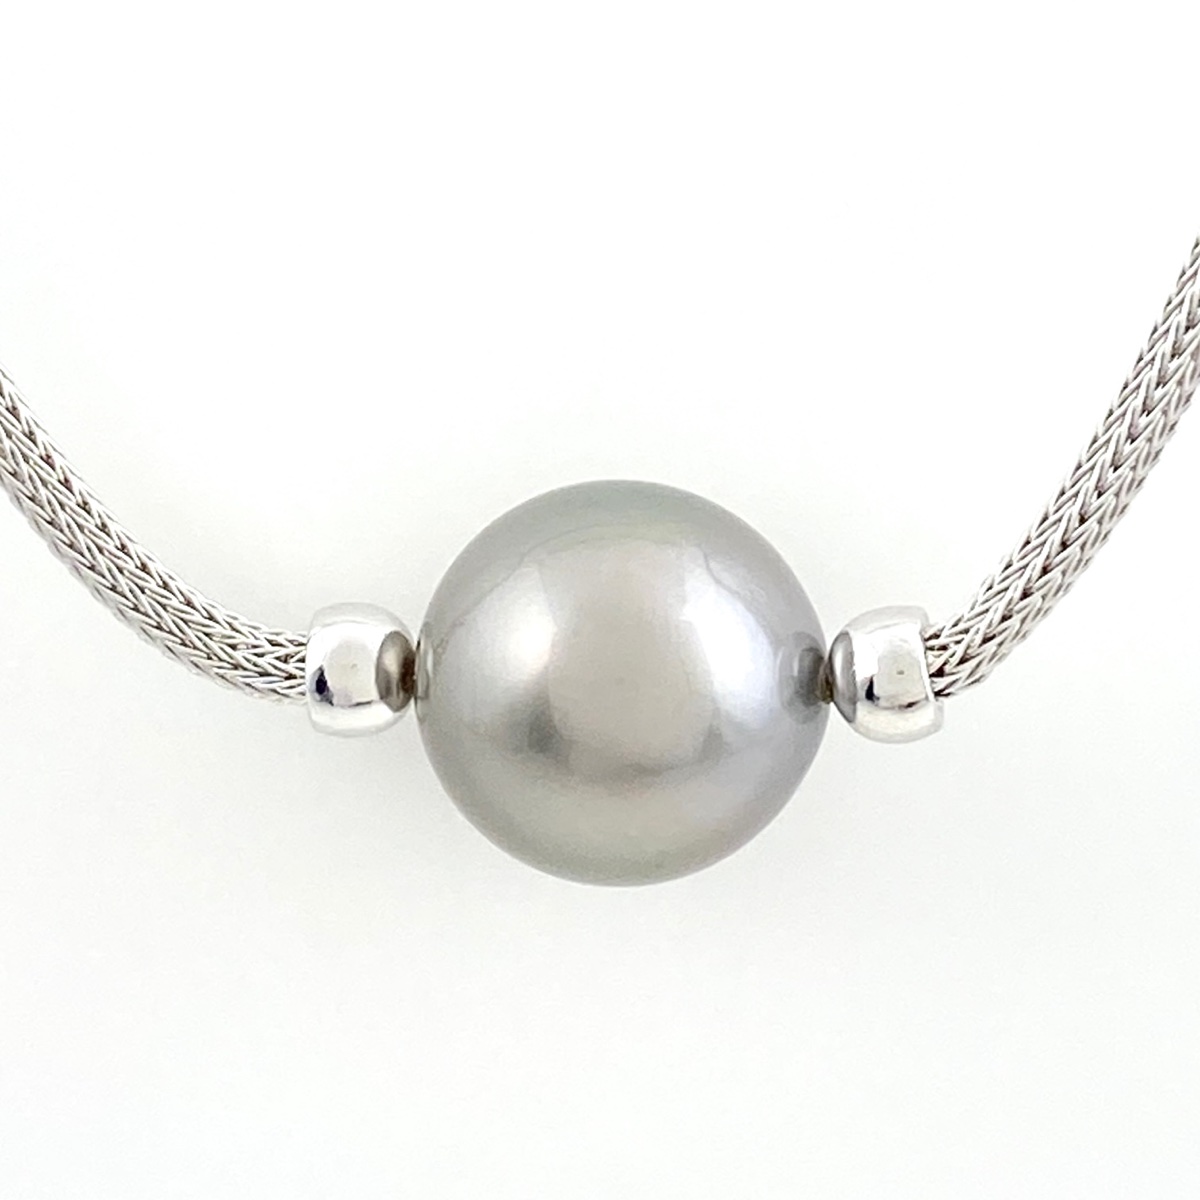 パール デザインネックレス K18 ホワイトゴールド ペンダント 真珠